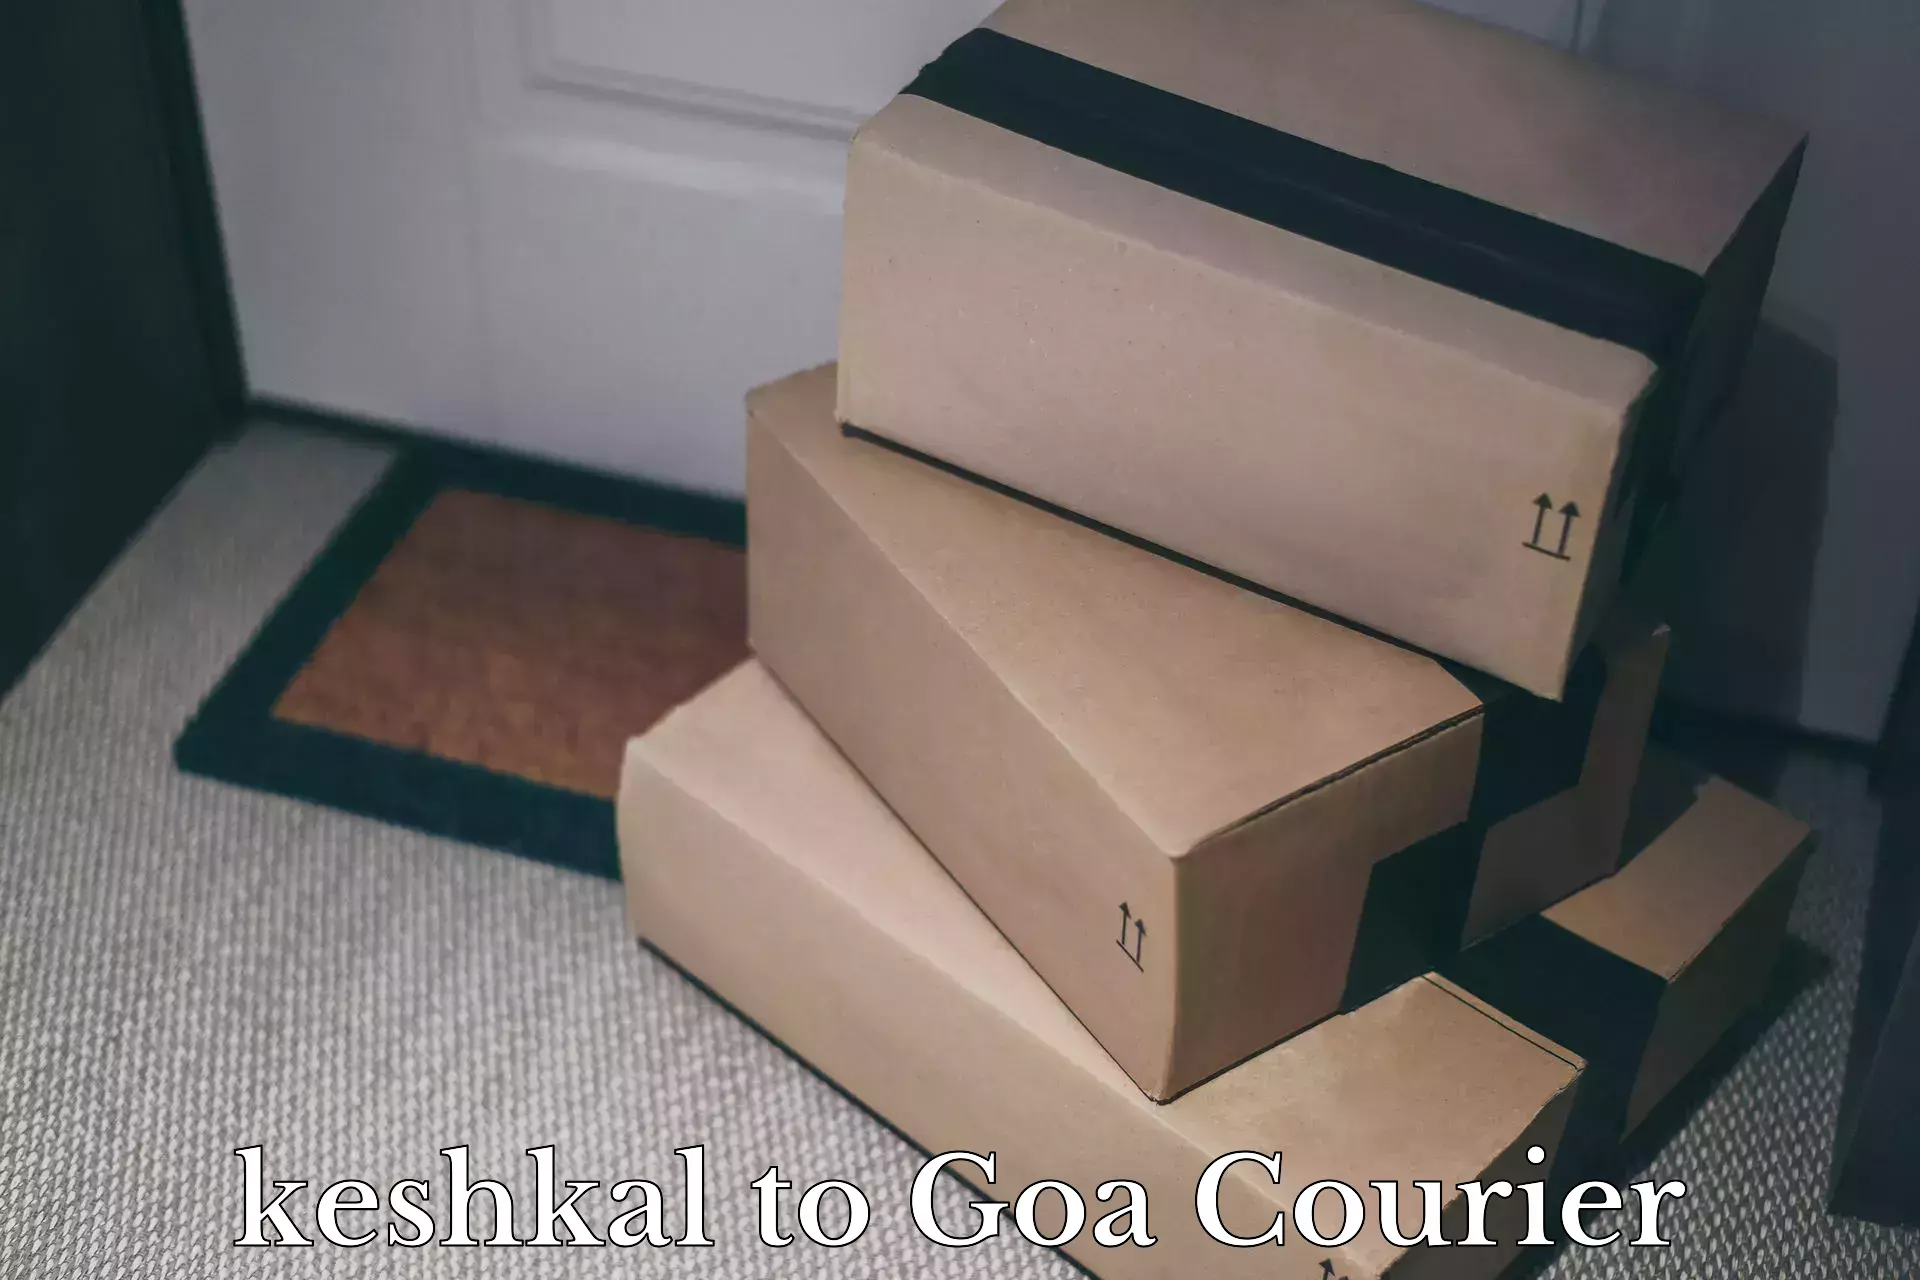 Full-service household moving keshkal to Goa